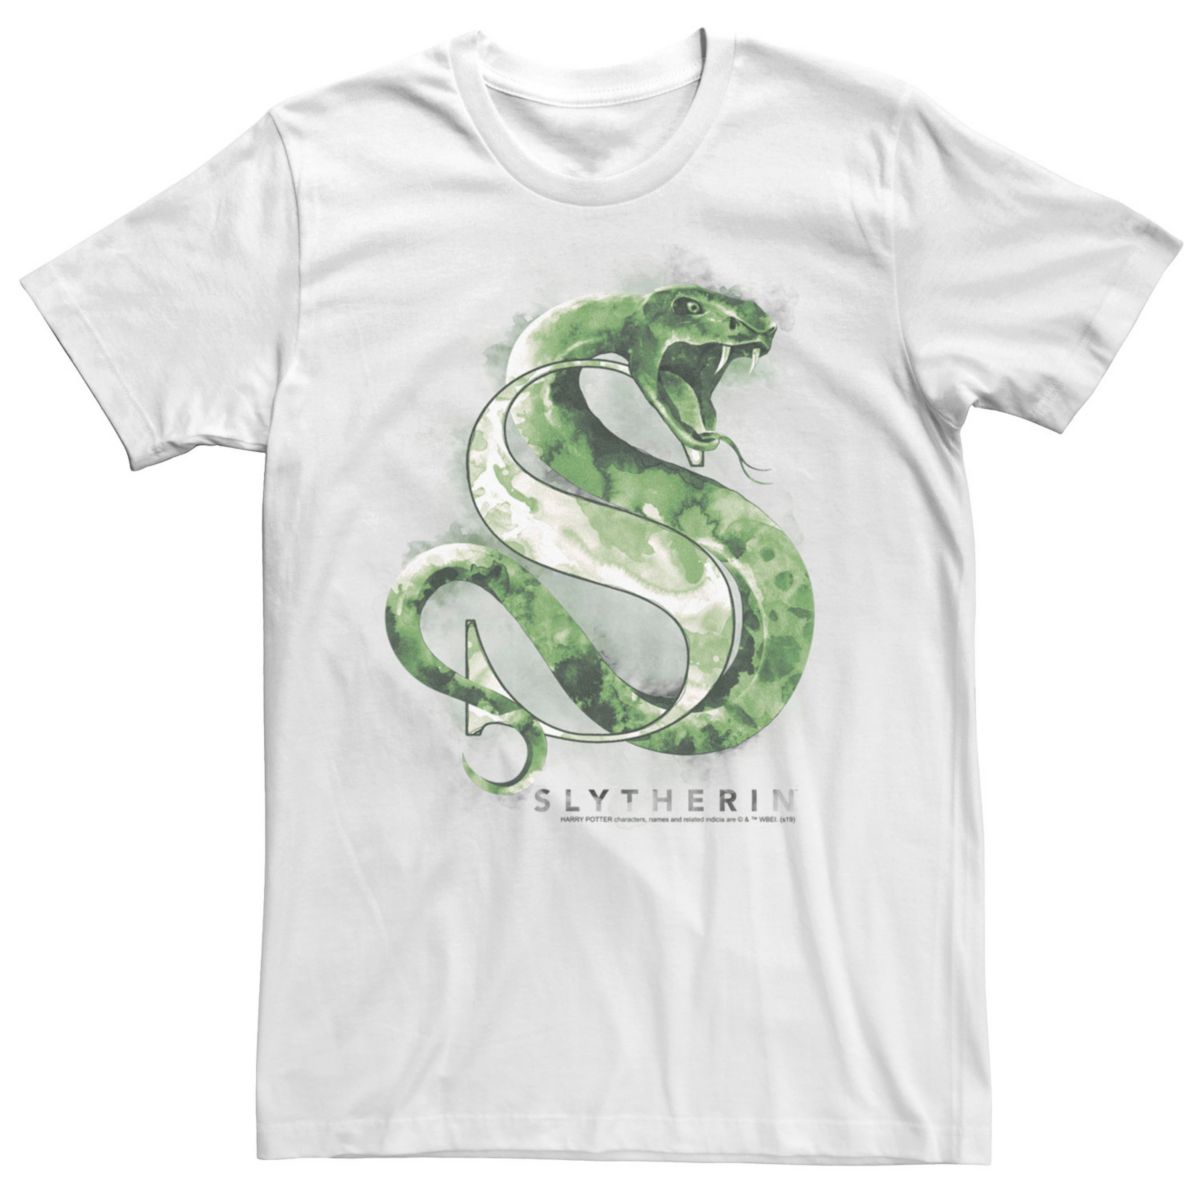 Мужская футболка с графическим рисунком и логотипом акварельного цвета в виде змеи Гарри Поттера Слизерина Harry Potter